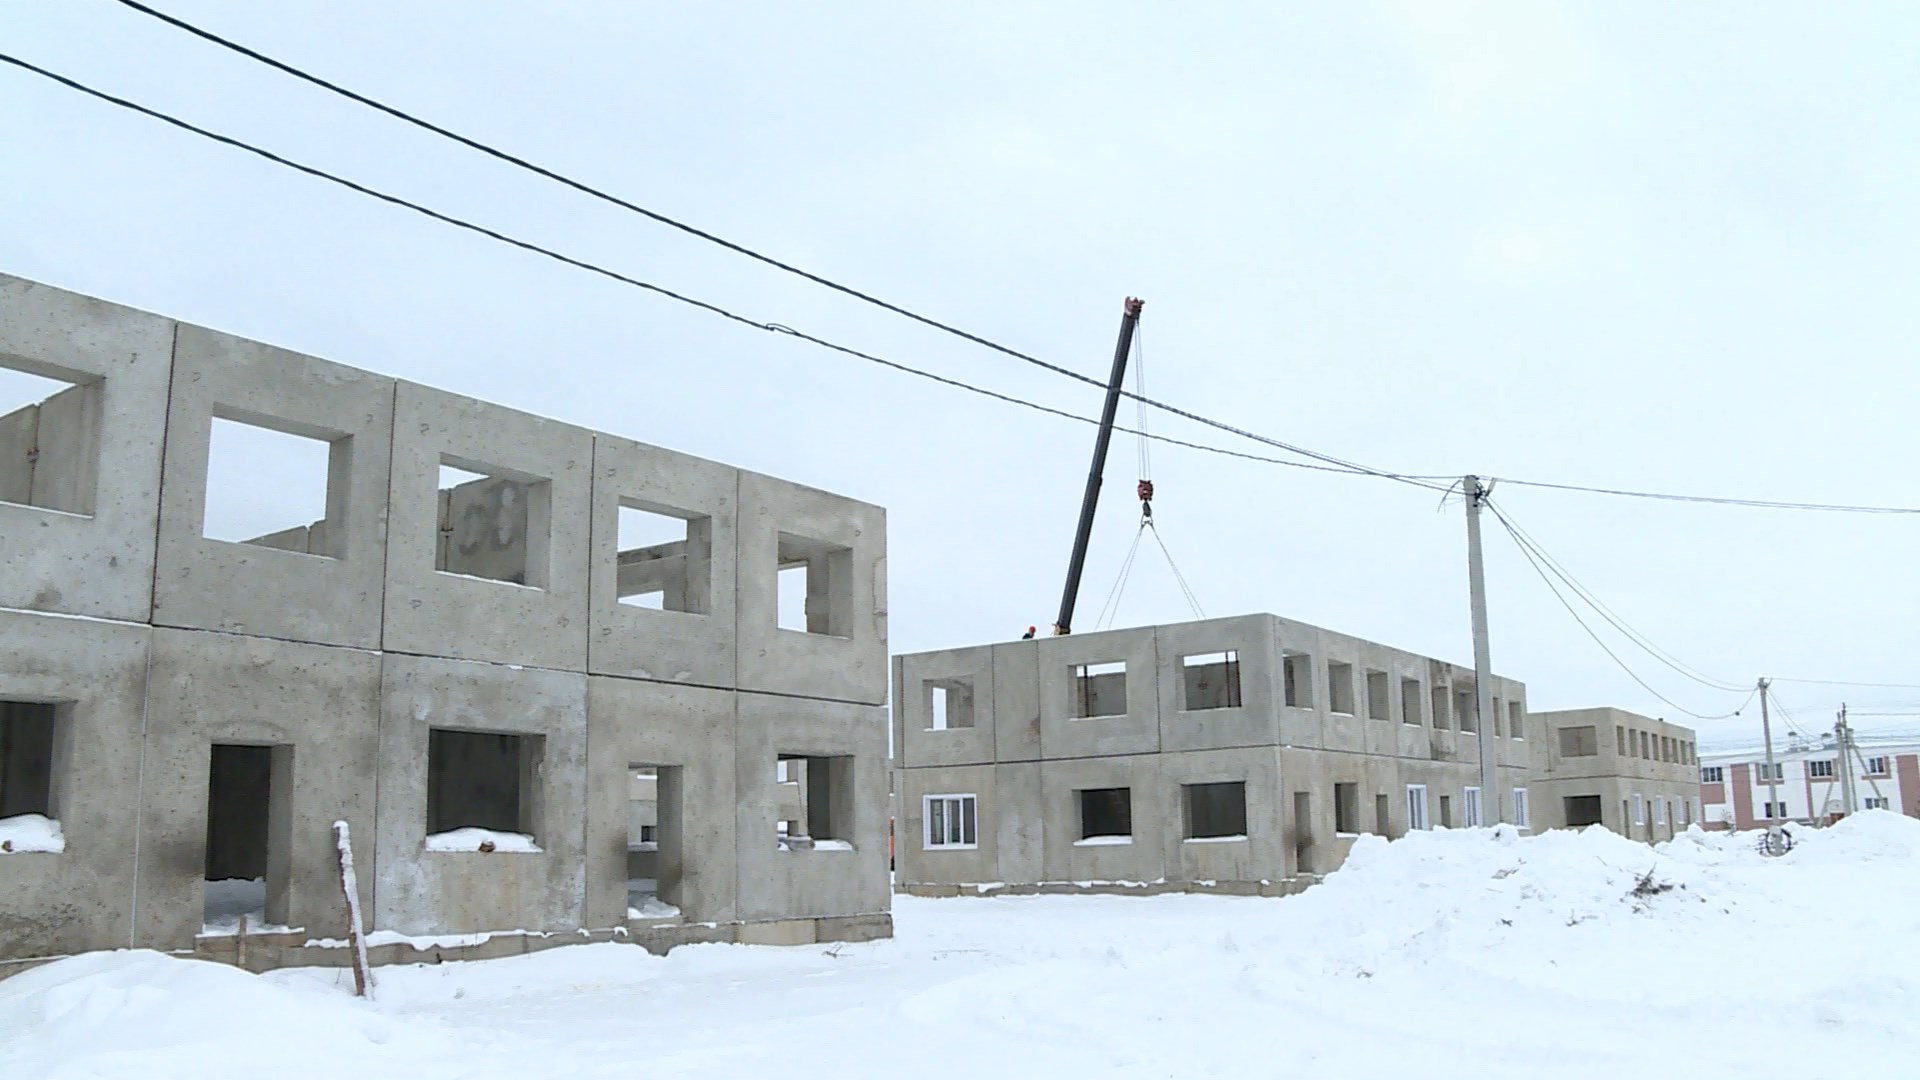 Жителям недостроенных домов поселка Первый в Костроме окажут юридическую помощь